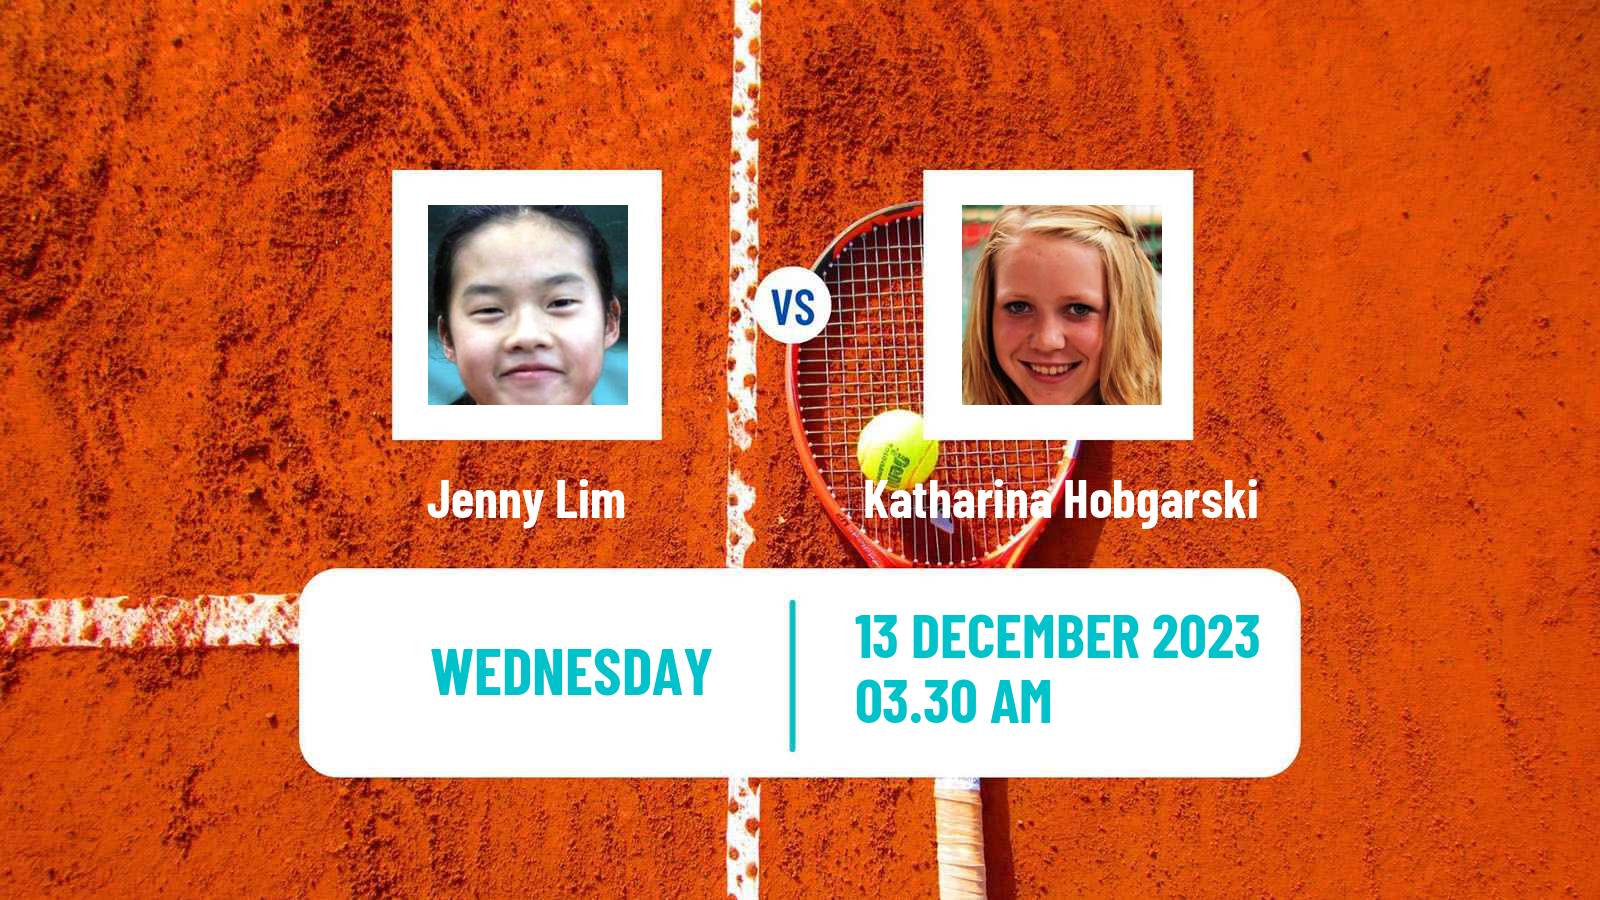 Tennis ITF W25 Monastir 6 Women Jenny Lim - Katharina Hobgarski